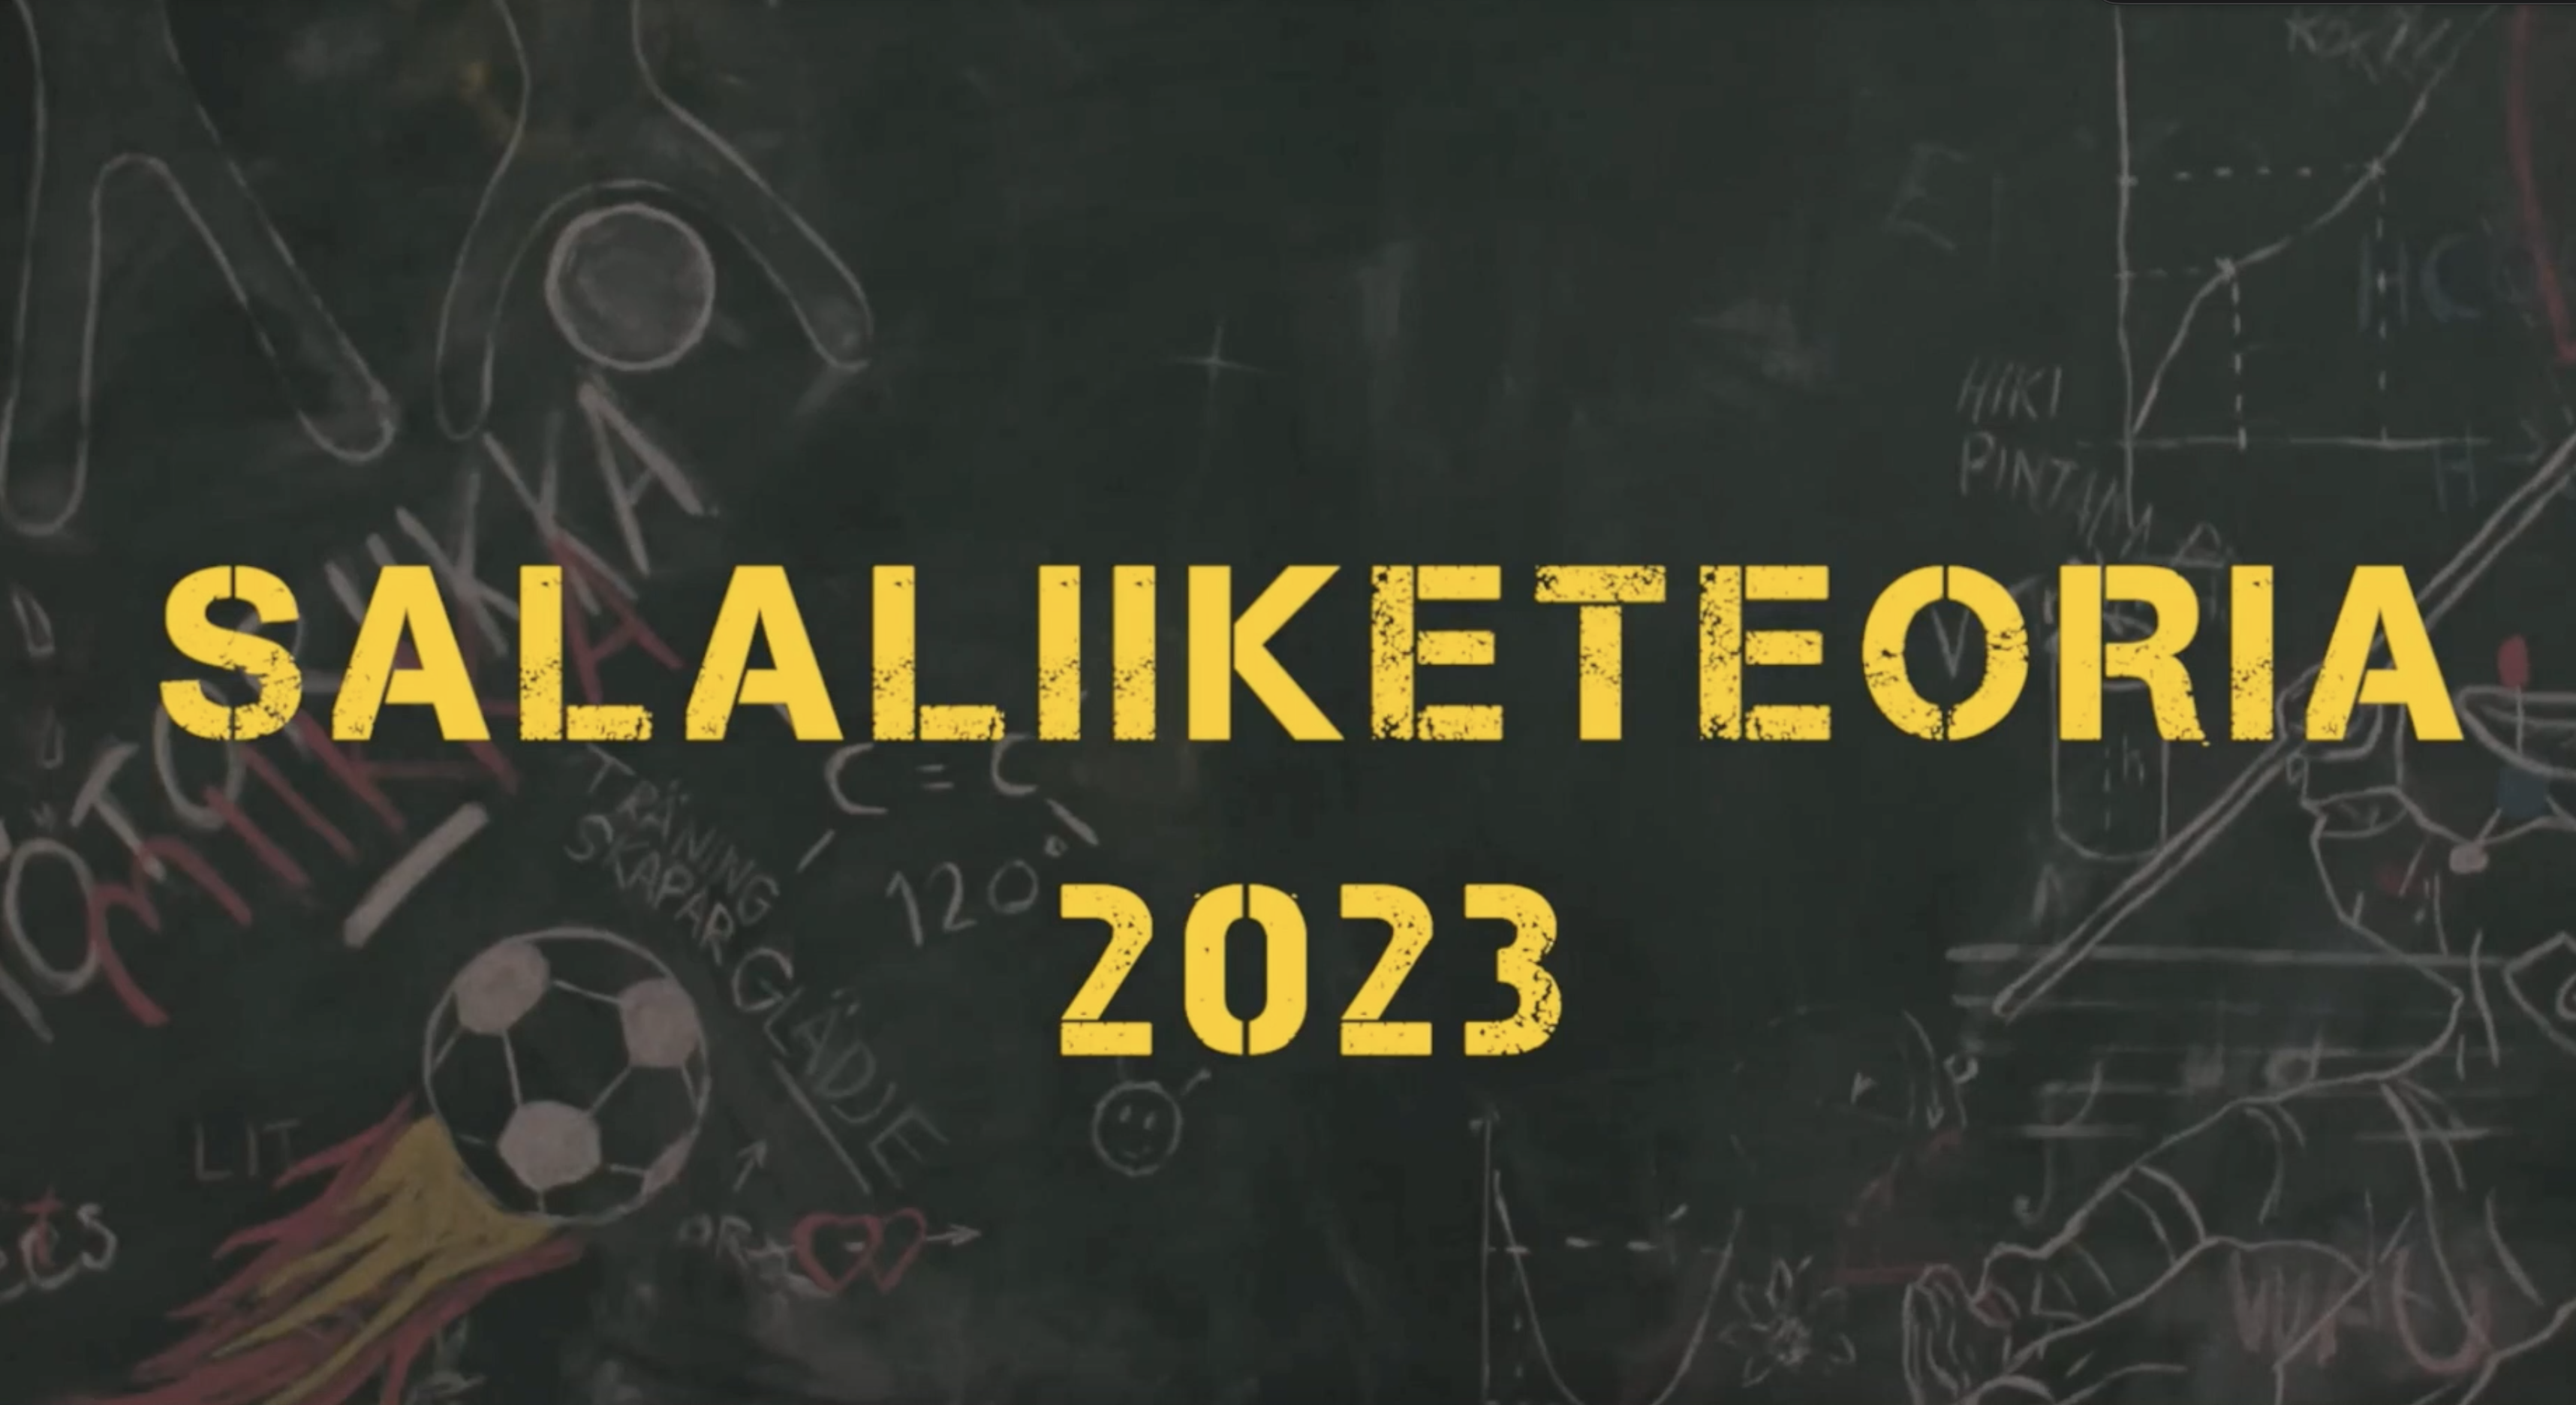 Salaliiketeoria 2023 logo